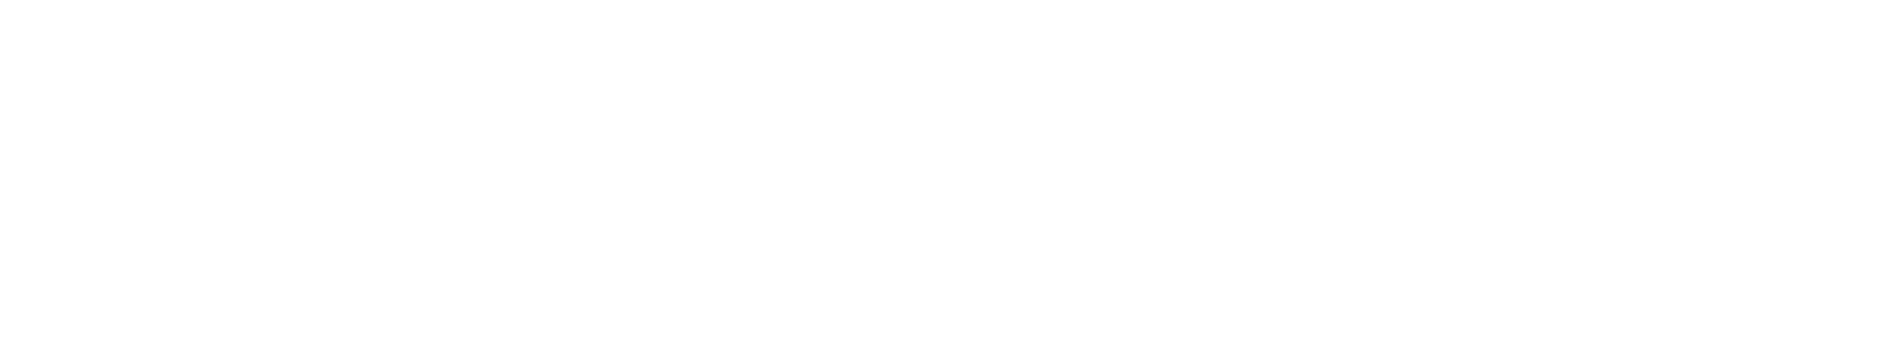 Knightfall Logo